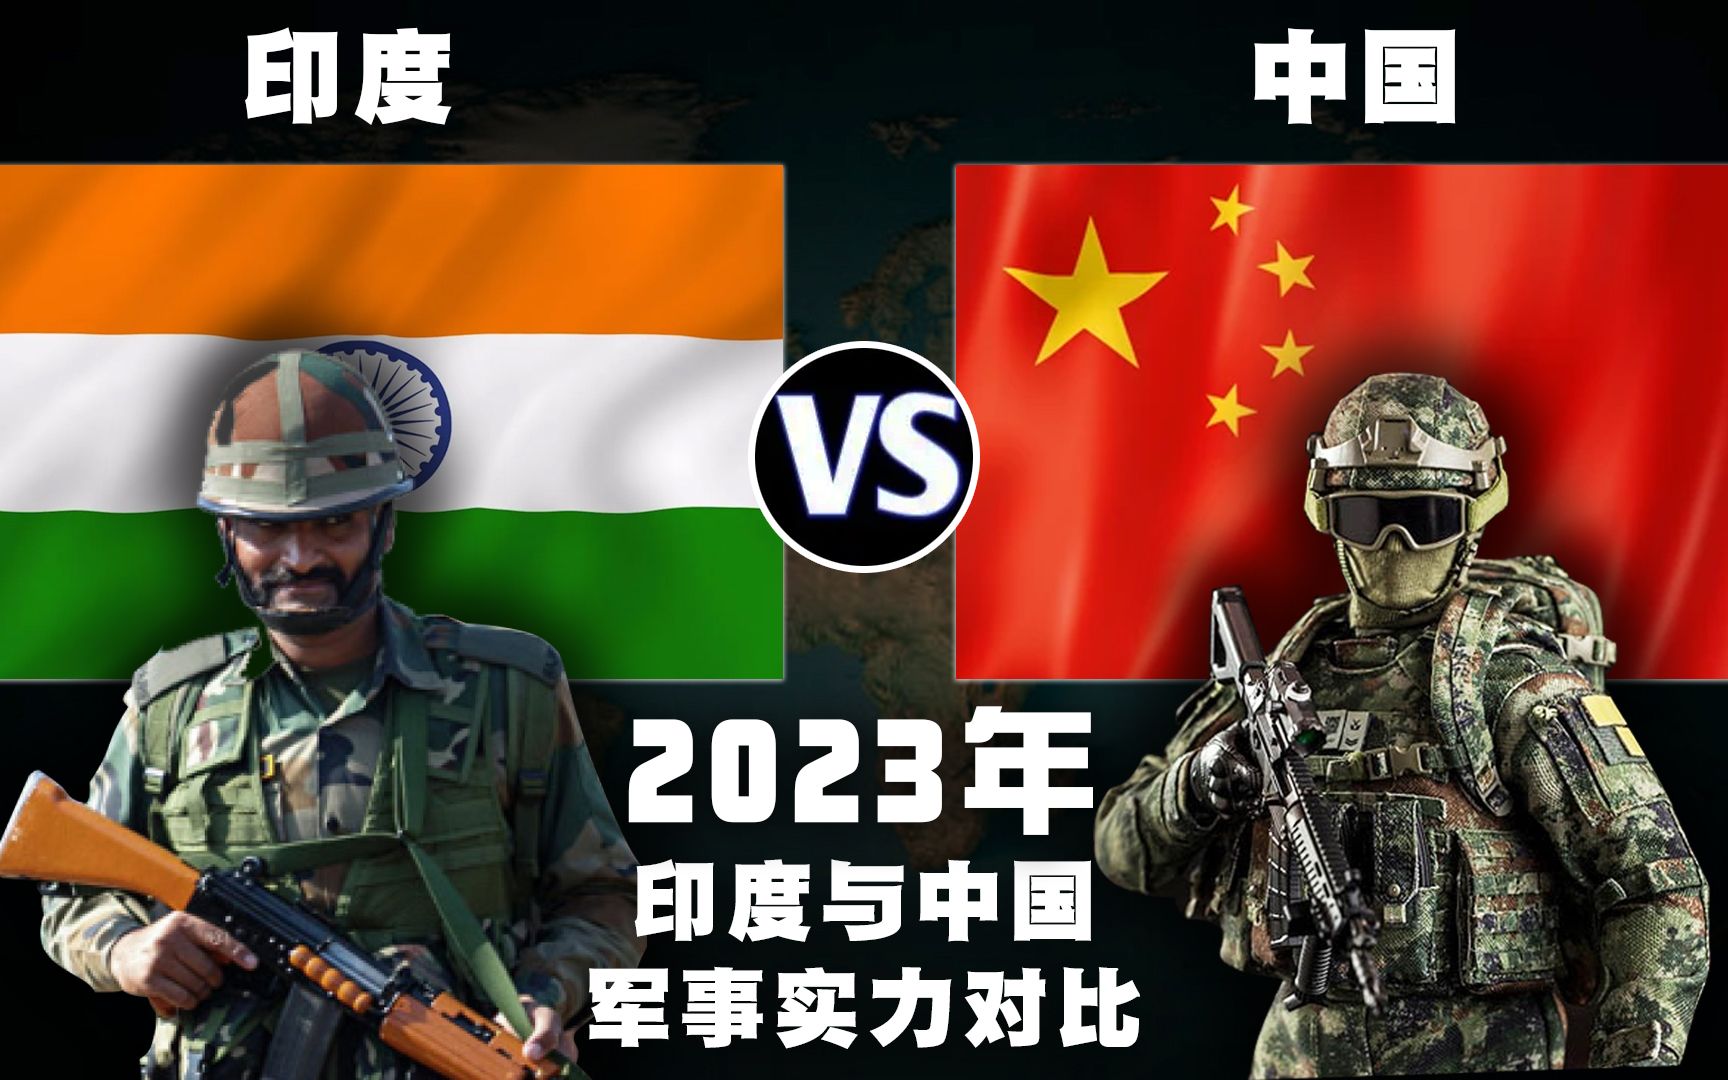 2023年,印度与中国的军事实力比较,差距比想象中的大